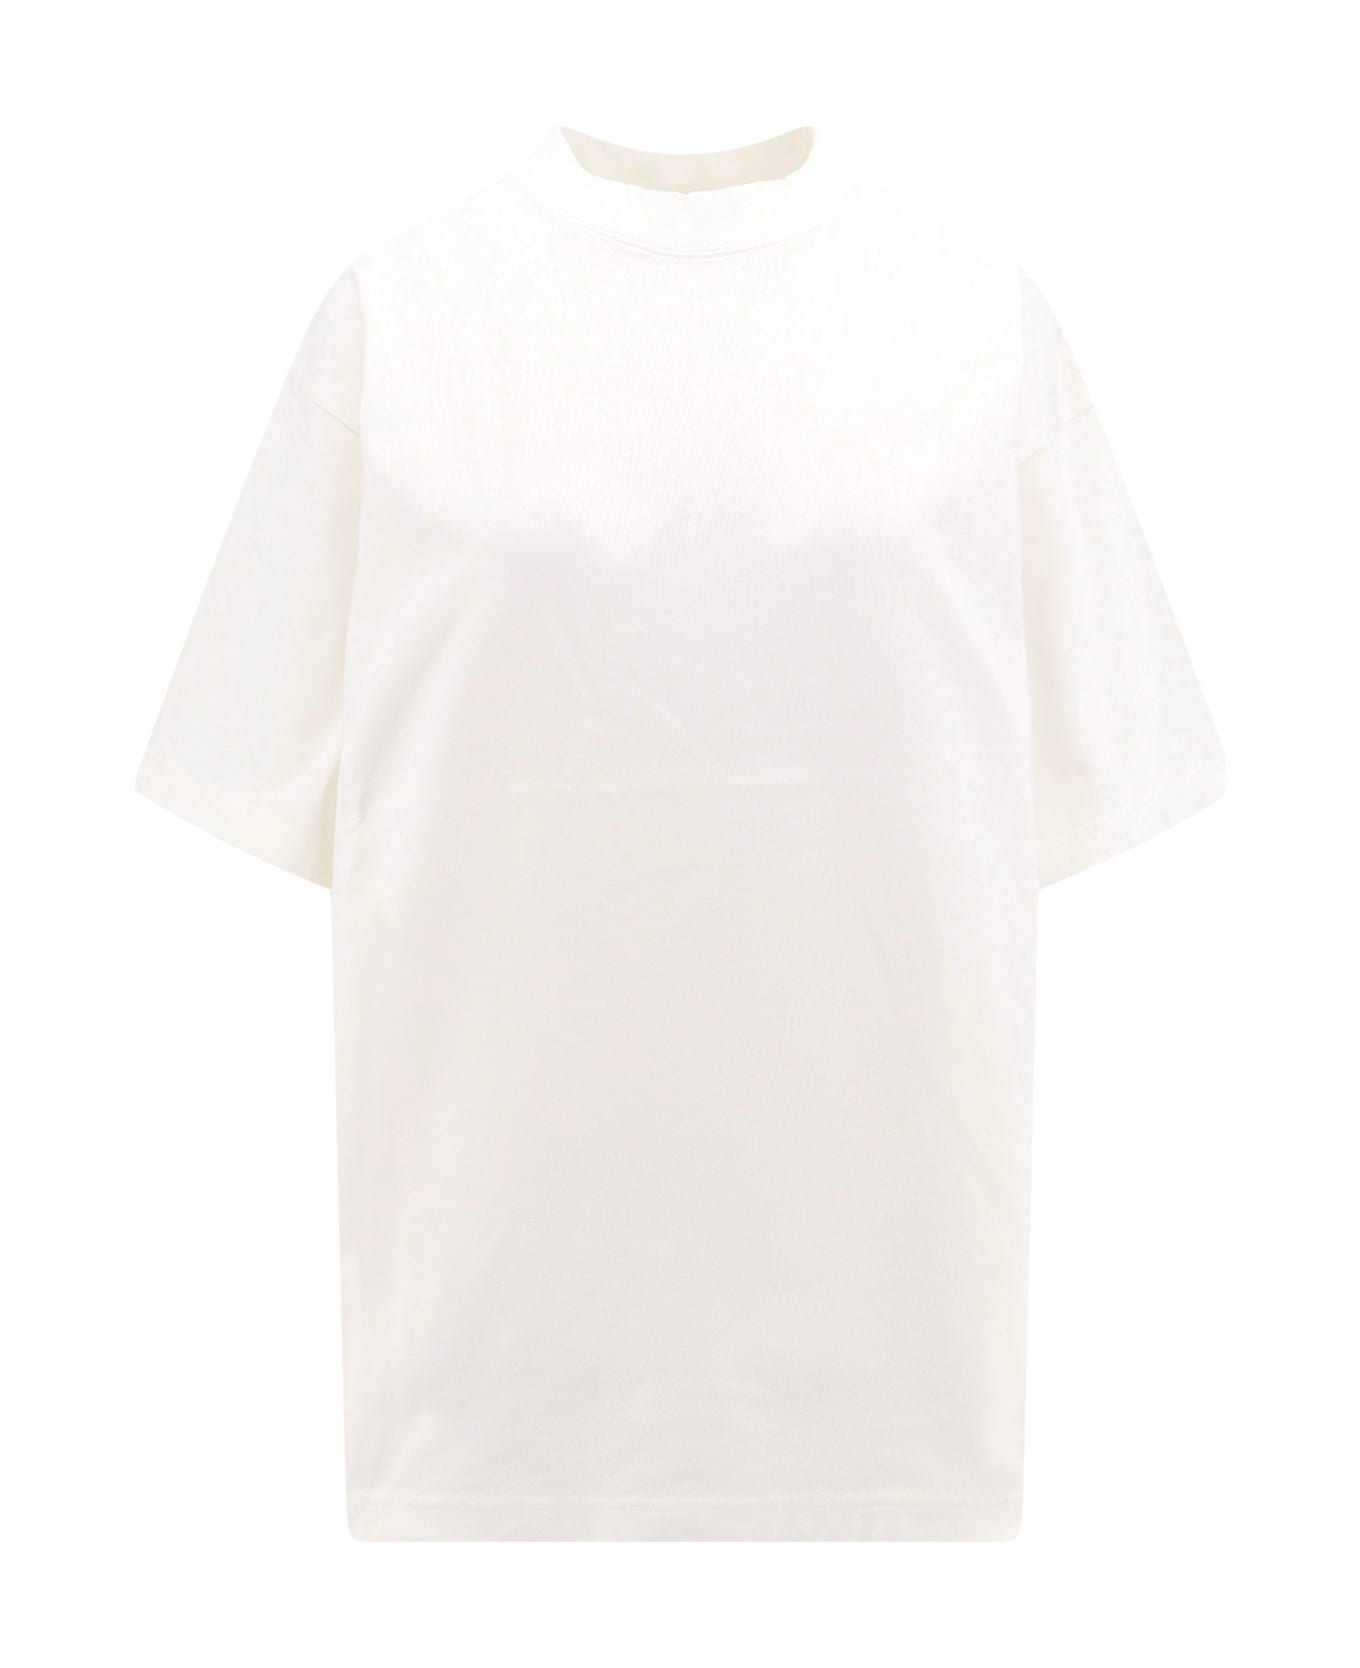 Balenciaga Hand-drawn T-shirt - White Tシャツ